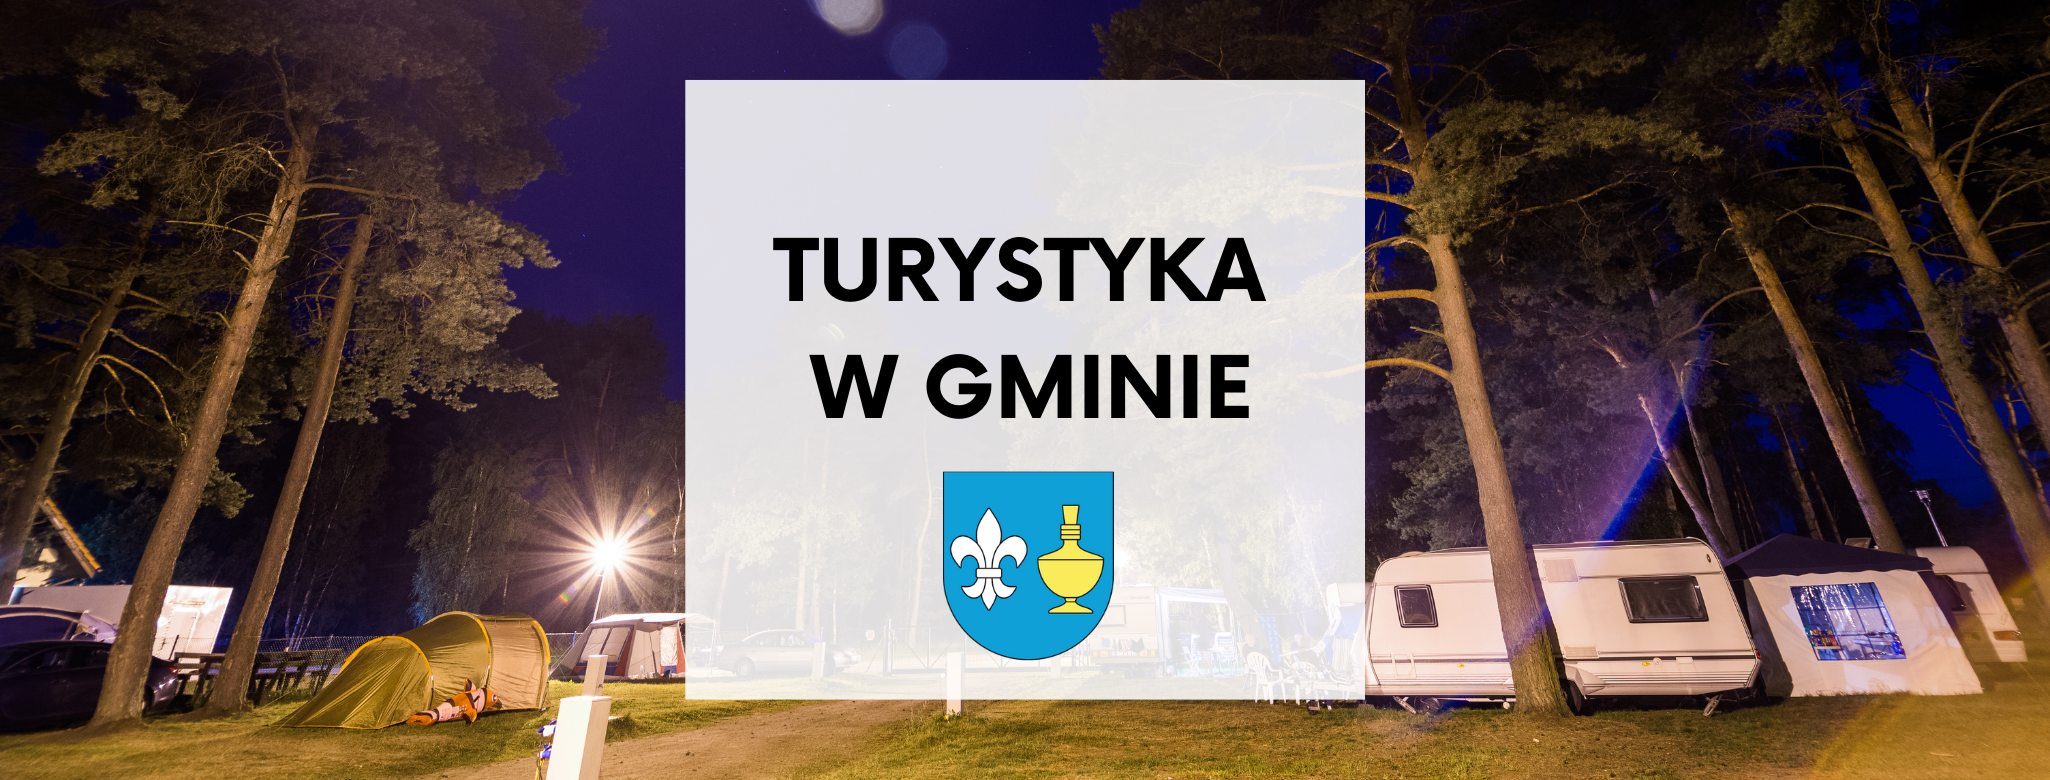 Treść grafiki: Turystyka w gminie. Na dole herb gminy Koczała. W tle zdjęcie pola namiotowego w nocy.